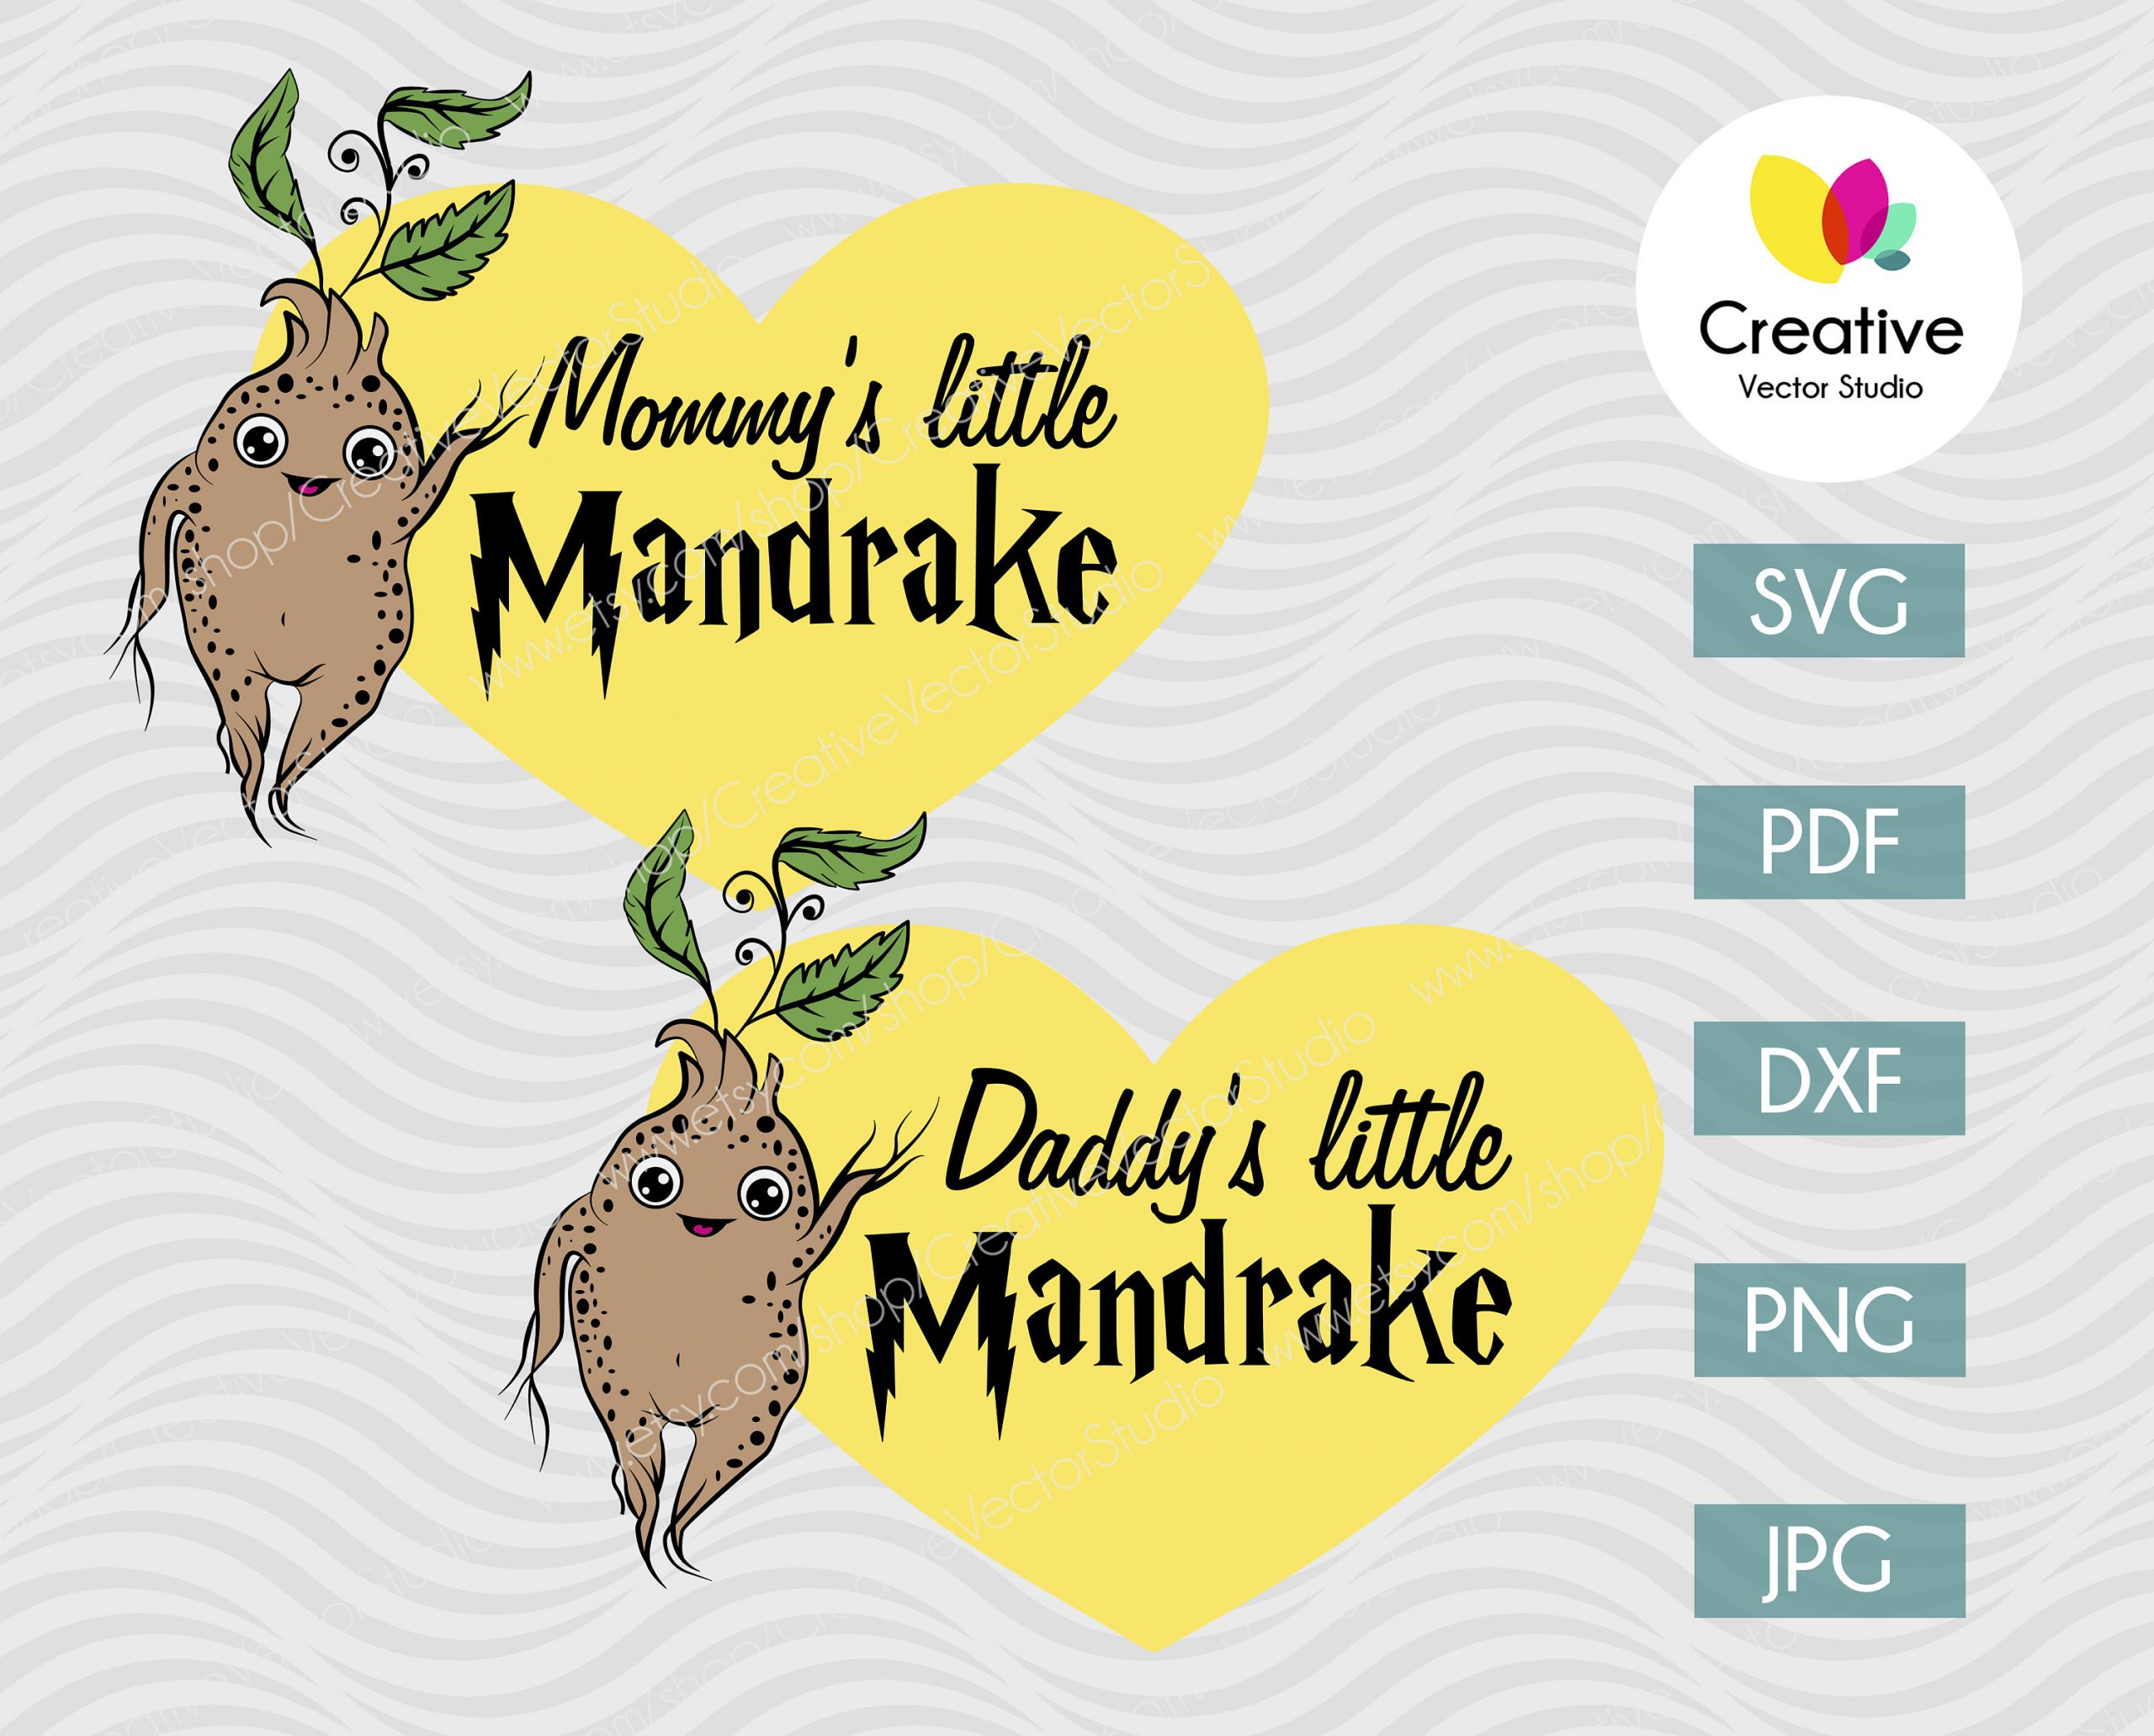 Vetor Mandrake 1 download gratuito